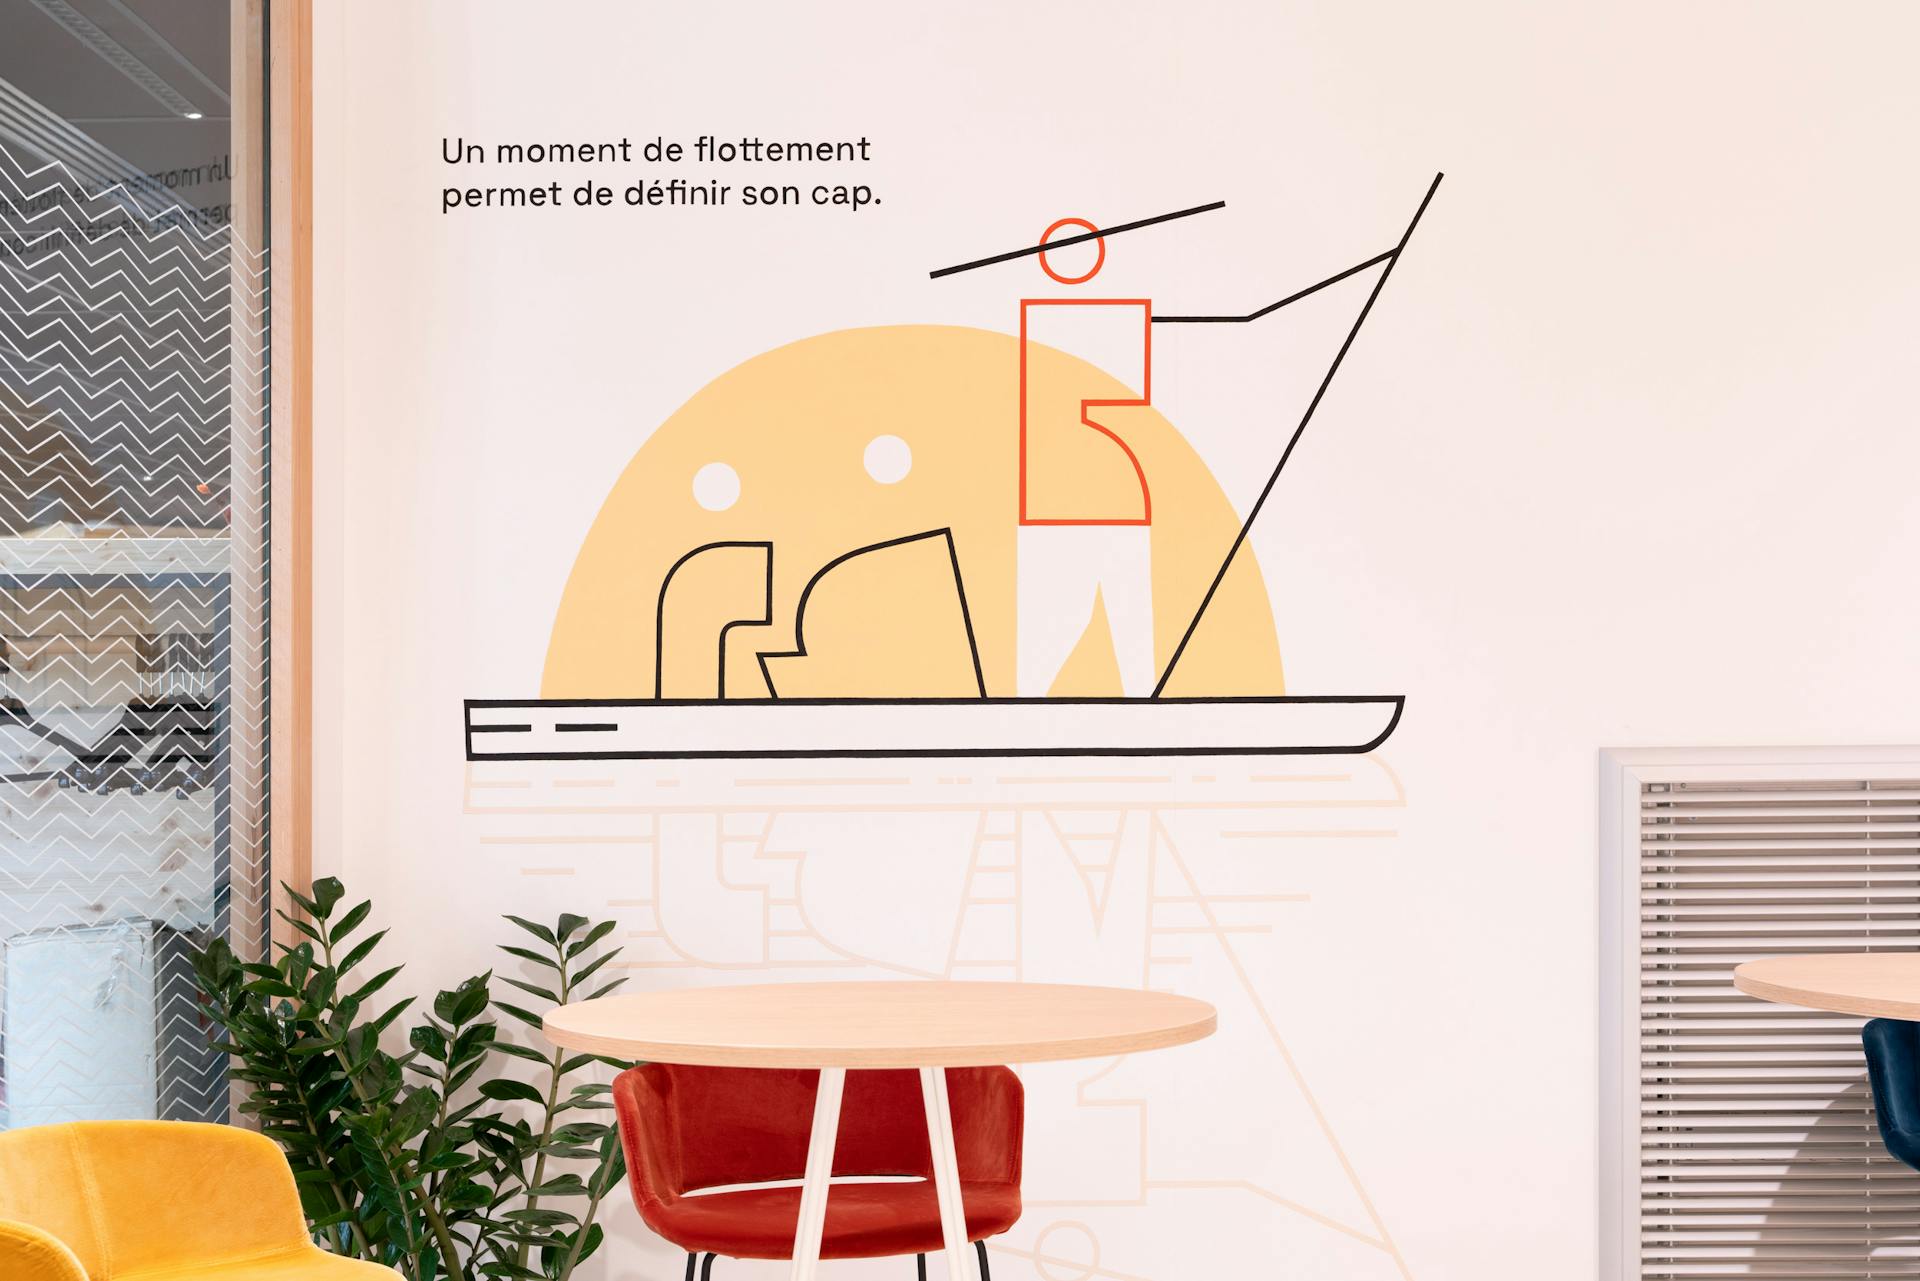 Une illustration filaire symbolisant des personnages voguant sur l'eau à l'aide d'une barque, apposée par sticker dans le cadre de l'aménagement de la Maison de l'Entreprise à Saint-Nazaire par l'agence de design Studio Katra.